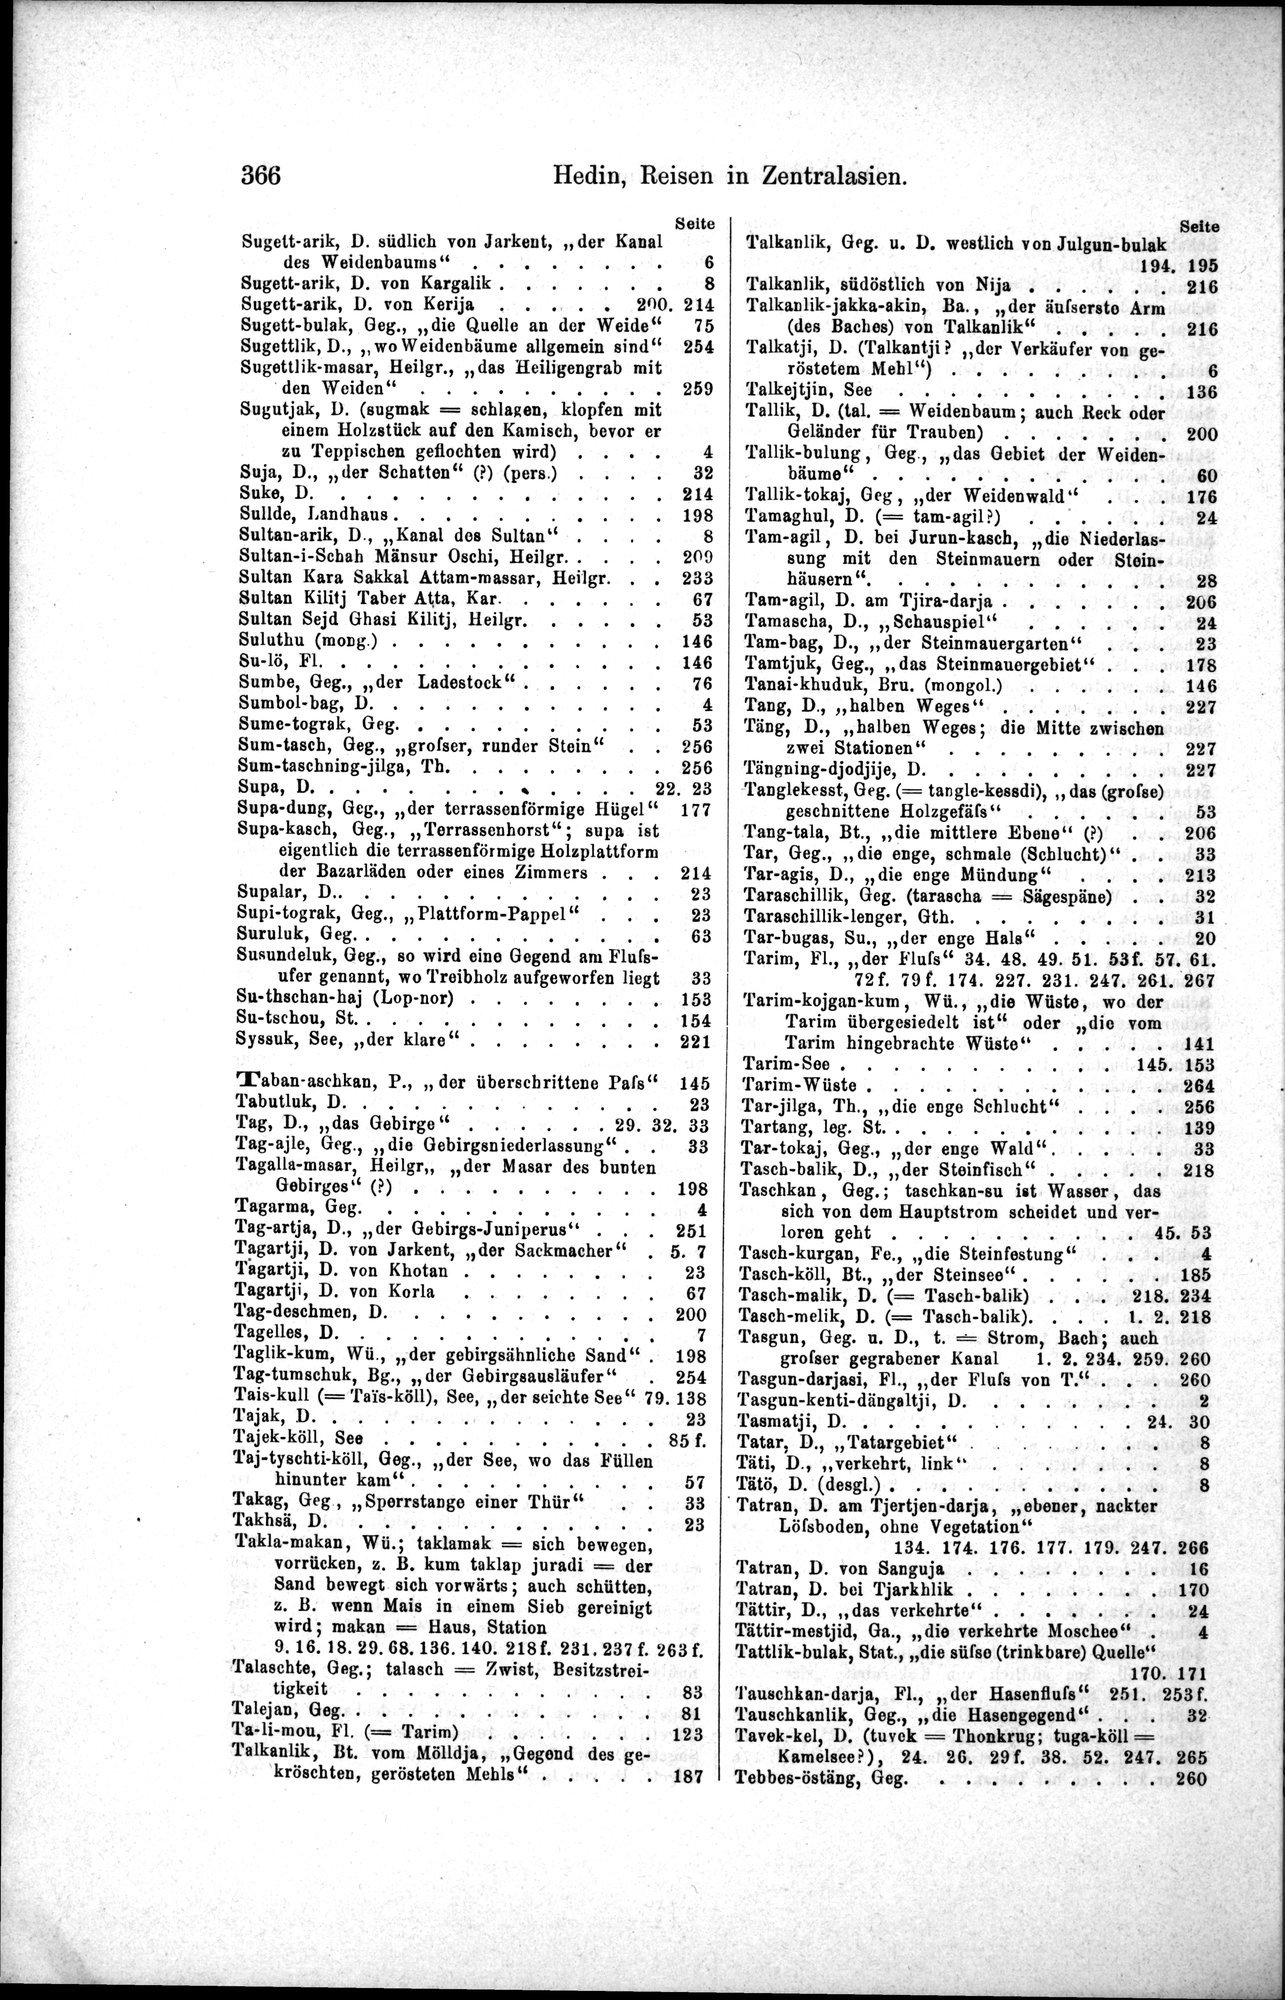 Die Geographische-Wissenschaftlichen Ergebnisse meiner Reisen in Zentralasien, 1894-1897 : vol.1 / Page 378 (Grayscale High Resolution Image)